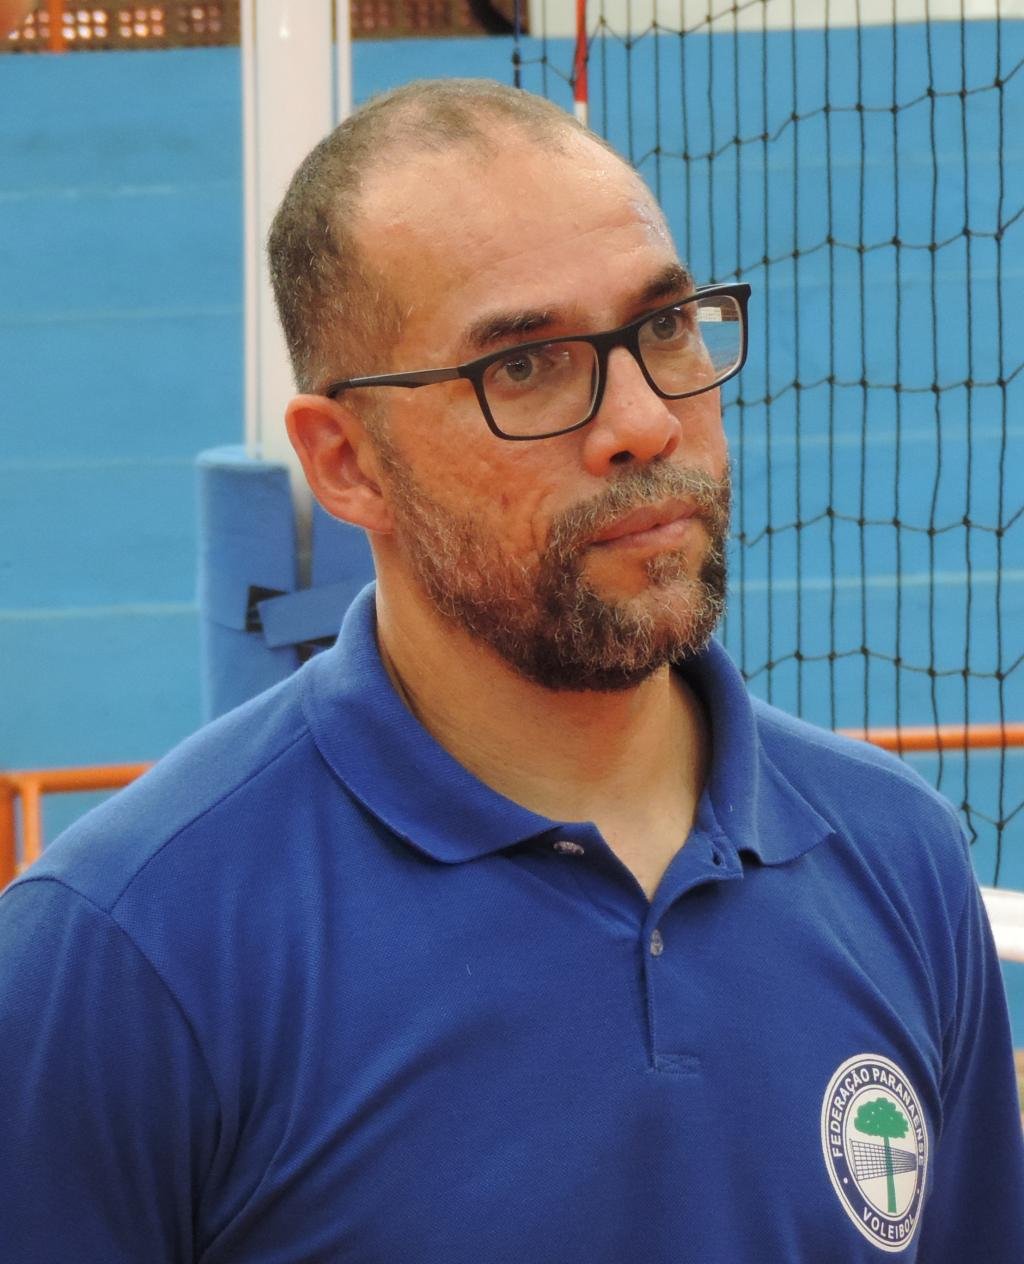 https://jornalnoroeste.com/uploads/images/2019/03/selecao-paranaense-de-voleibol-realiza-treinamentos-em-nova-esperanca-bg-619-4c9f7.jpg